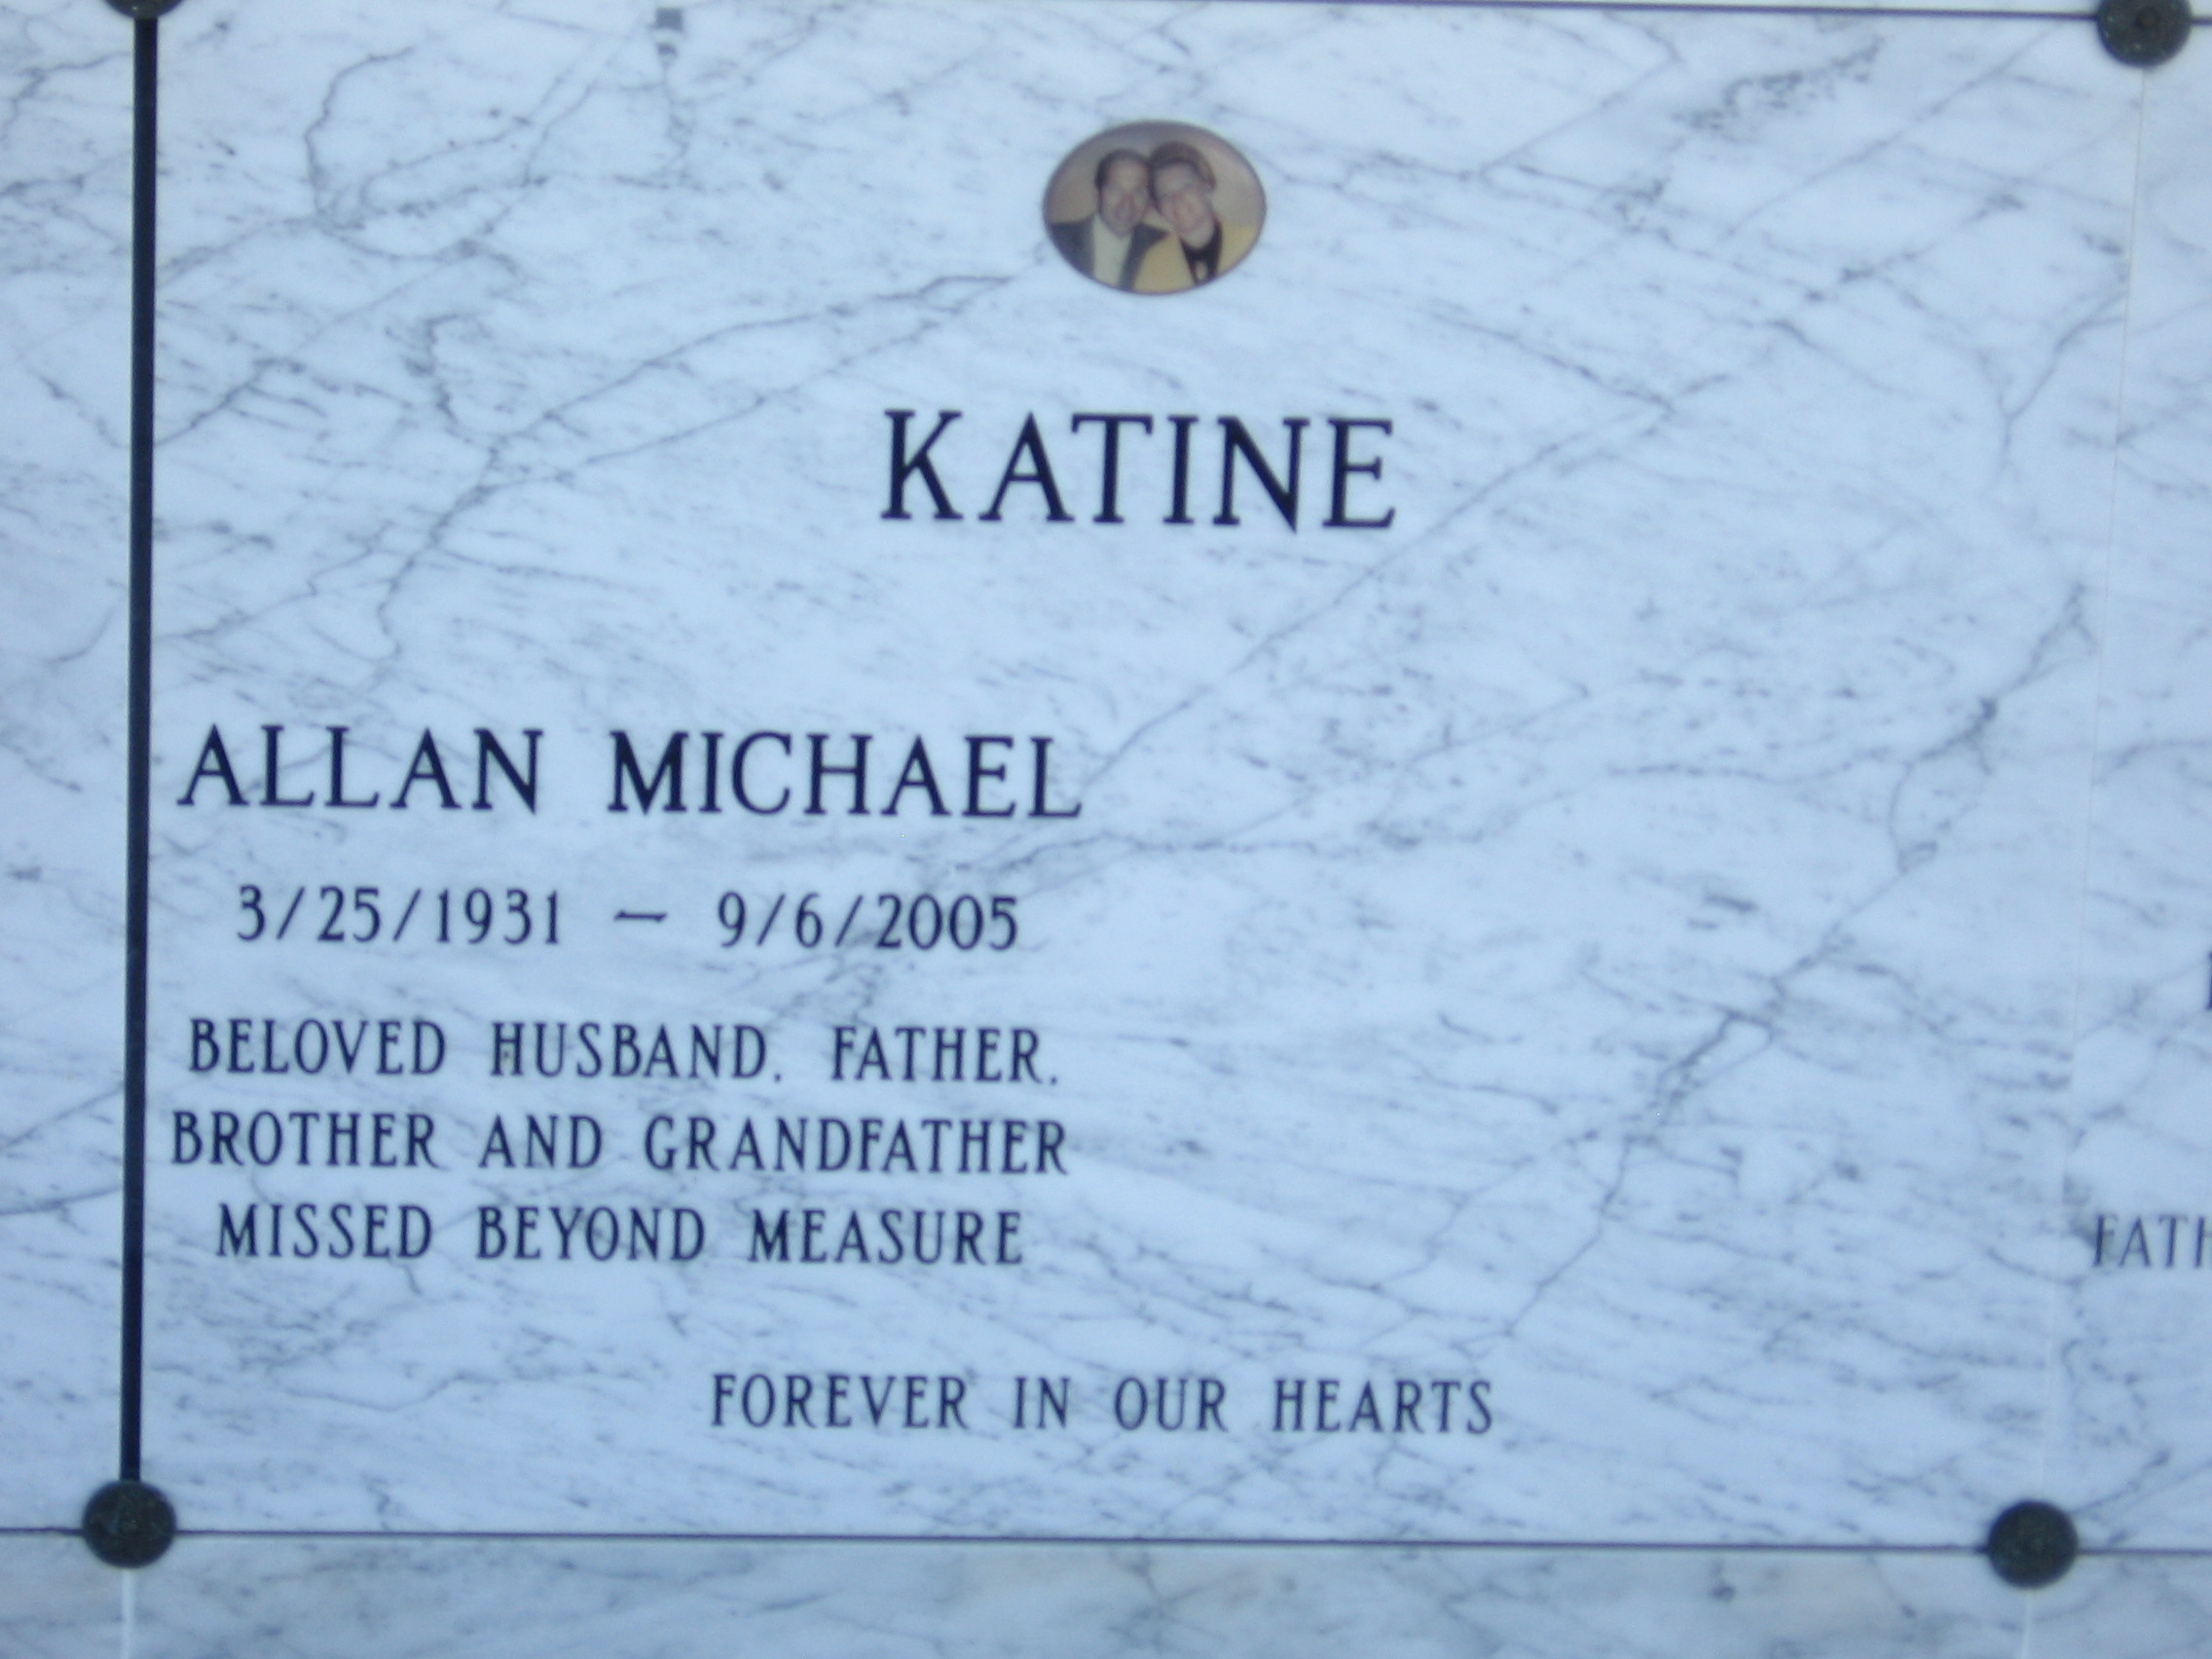 Allan Michael Katine